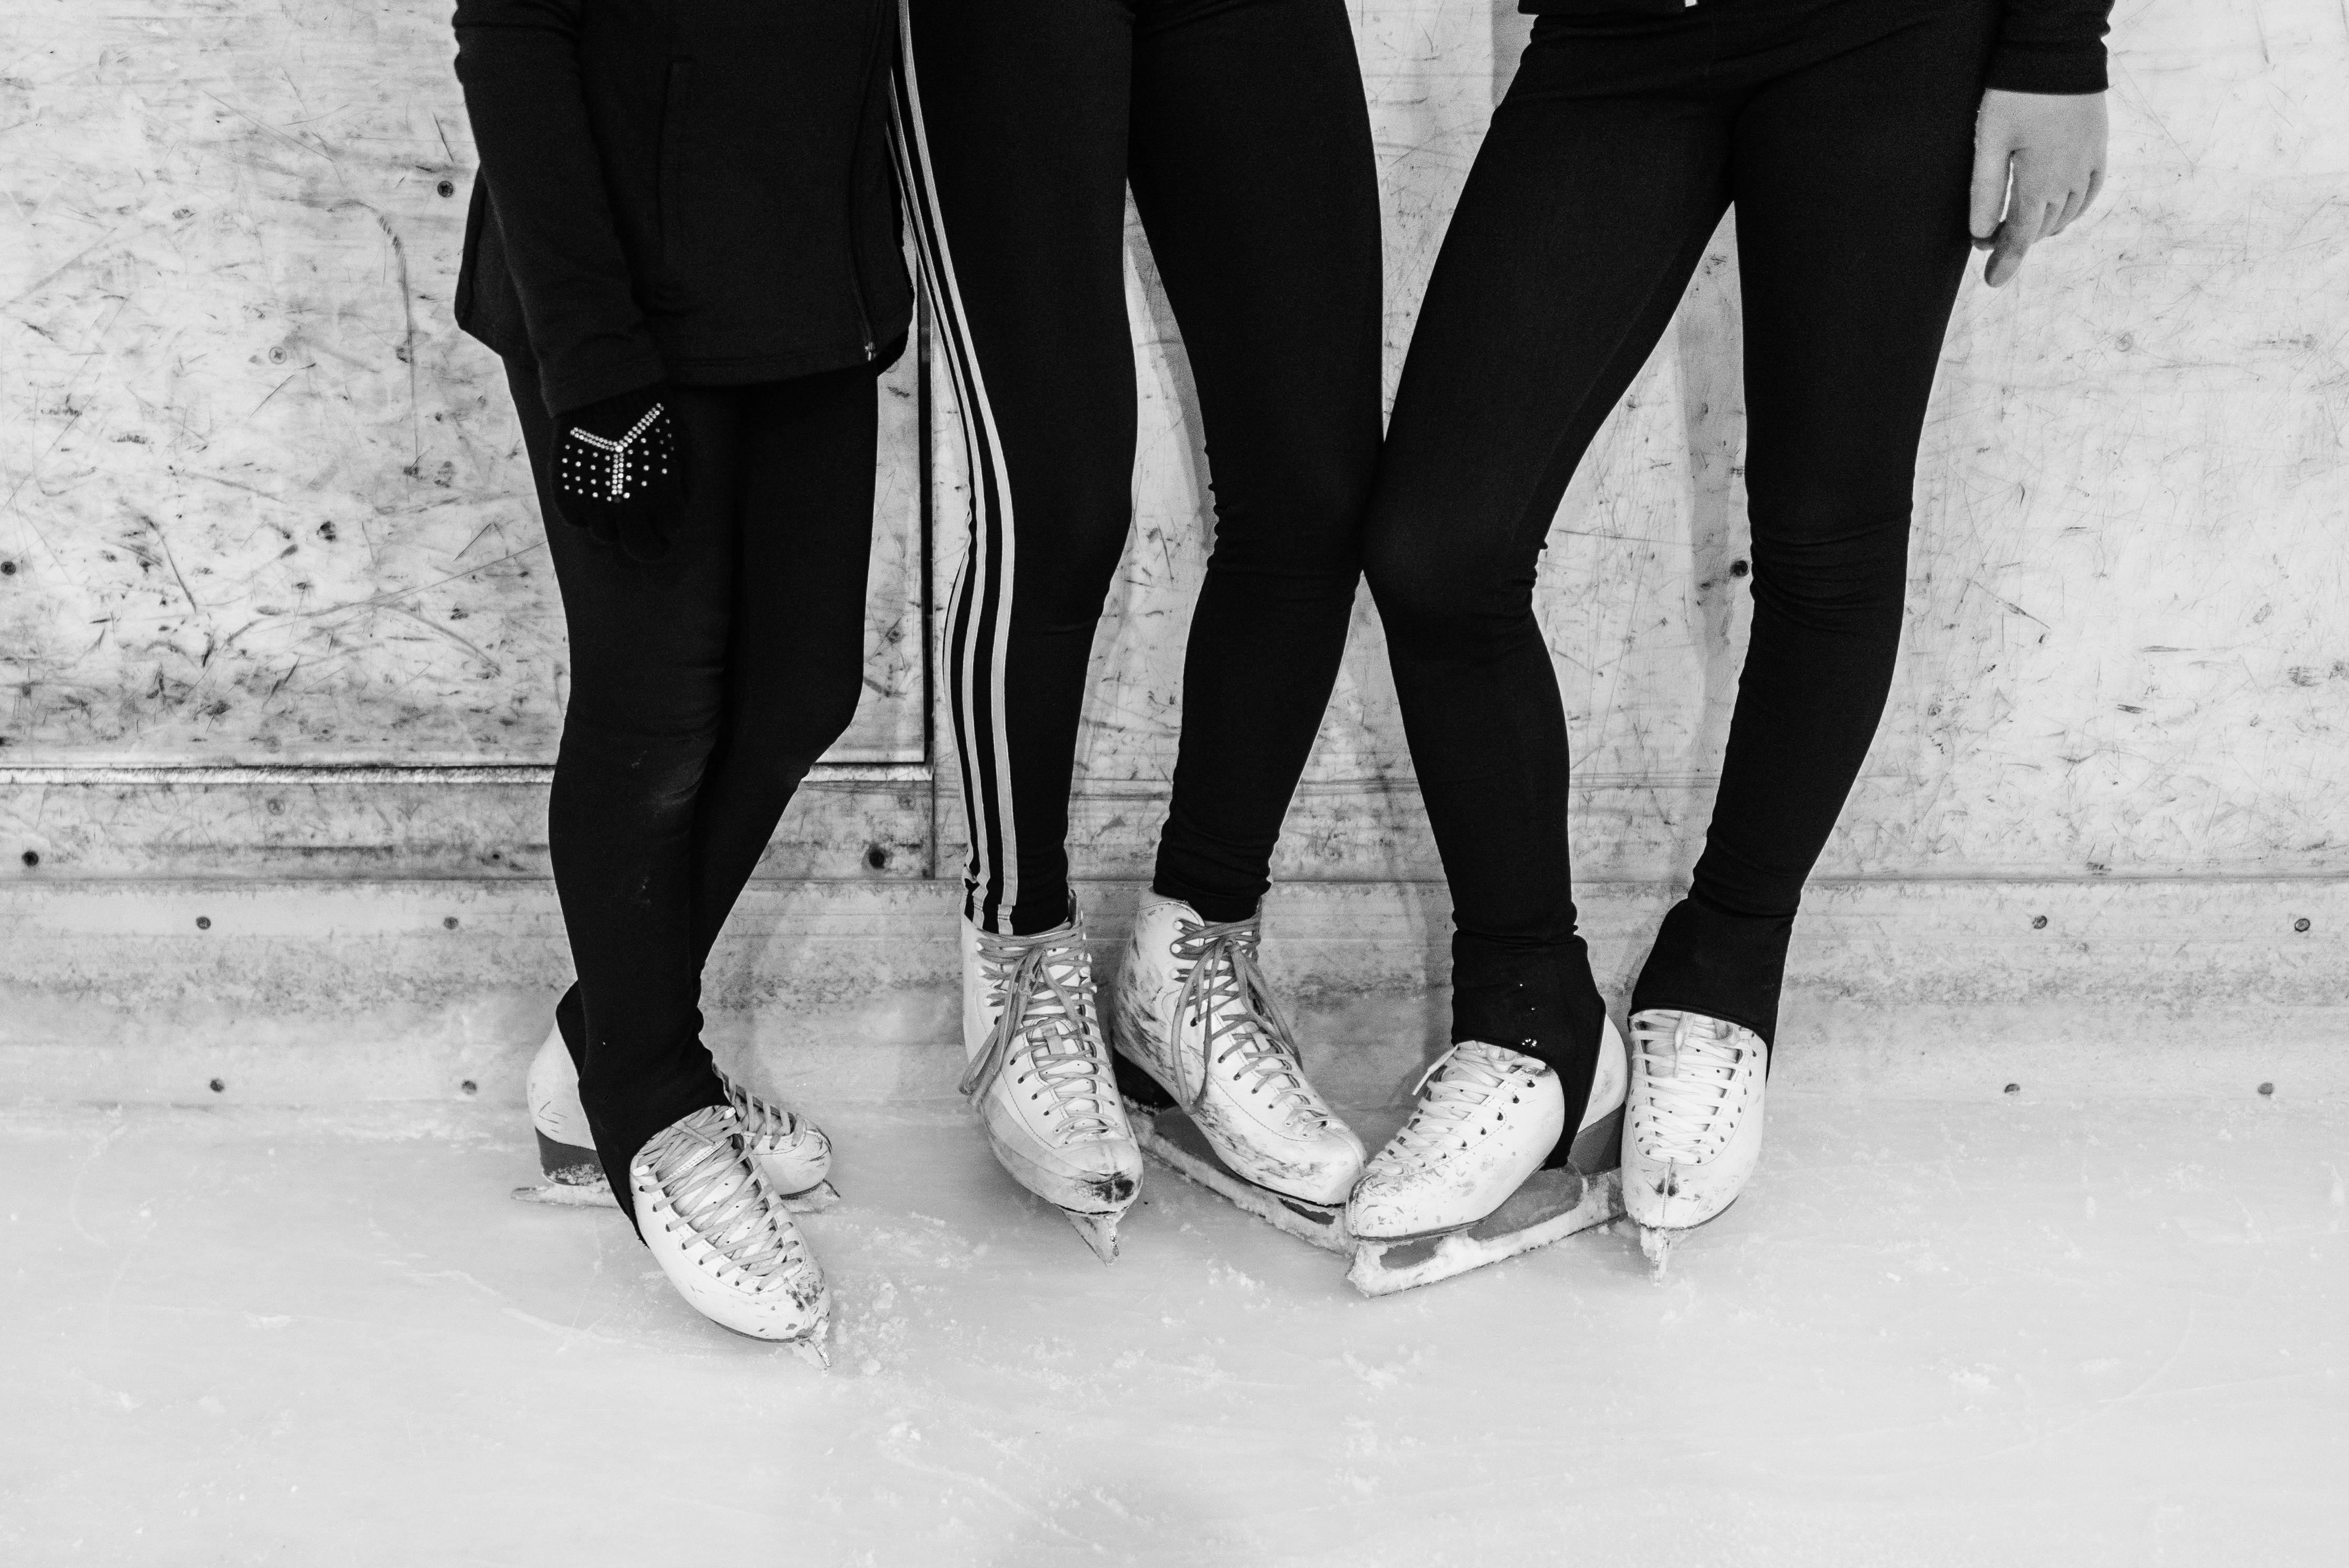 Figure Skating Leggings, Socks, Shoes, and Socks, Black and White